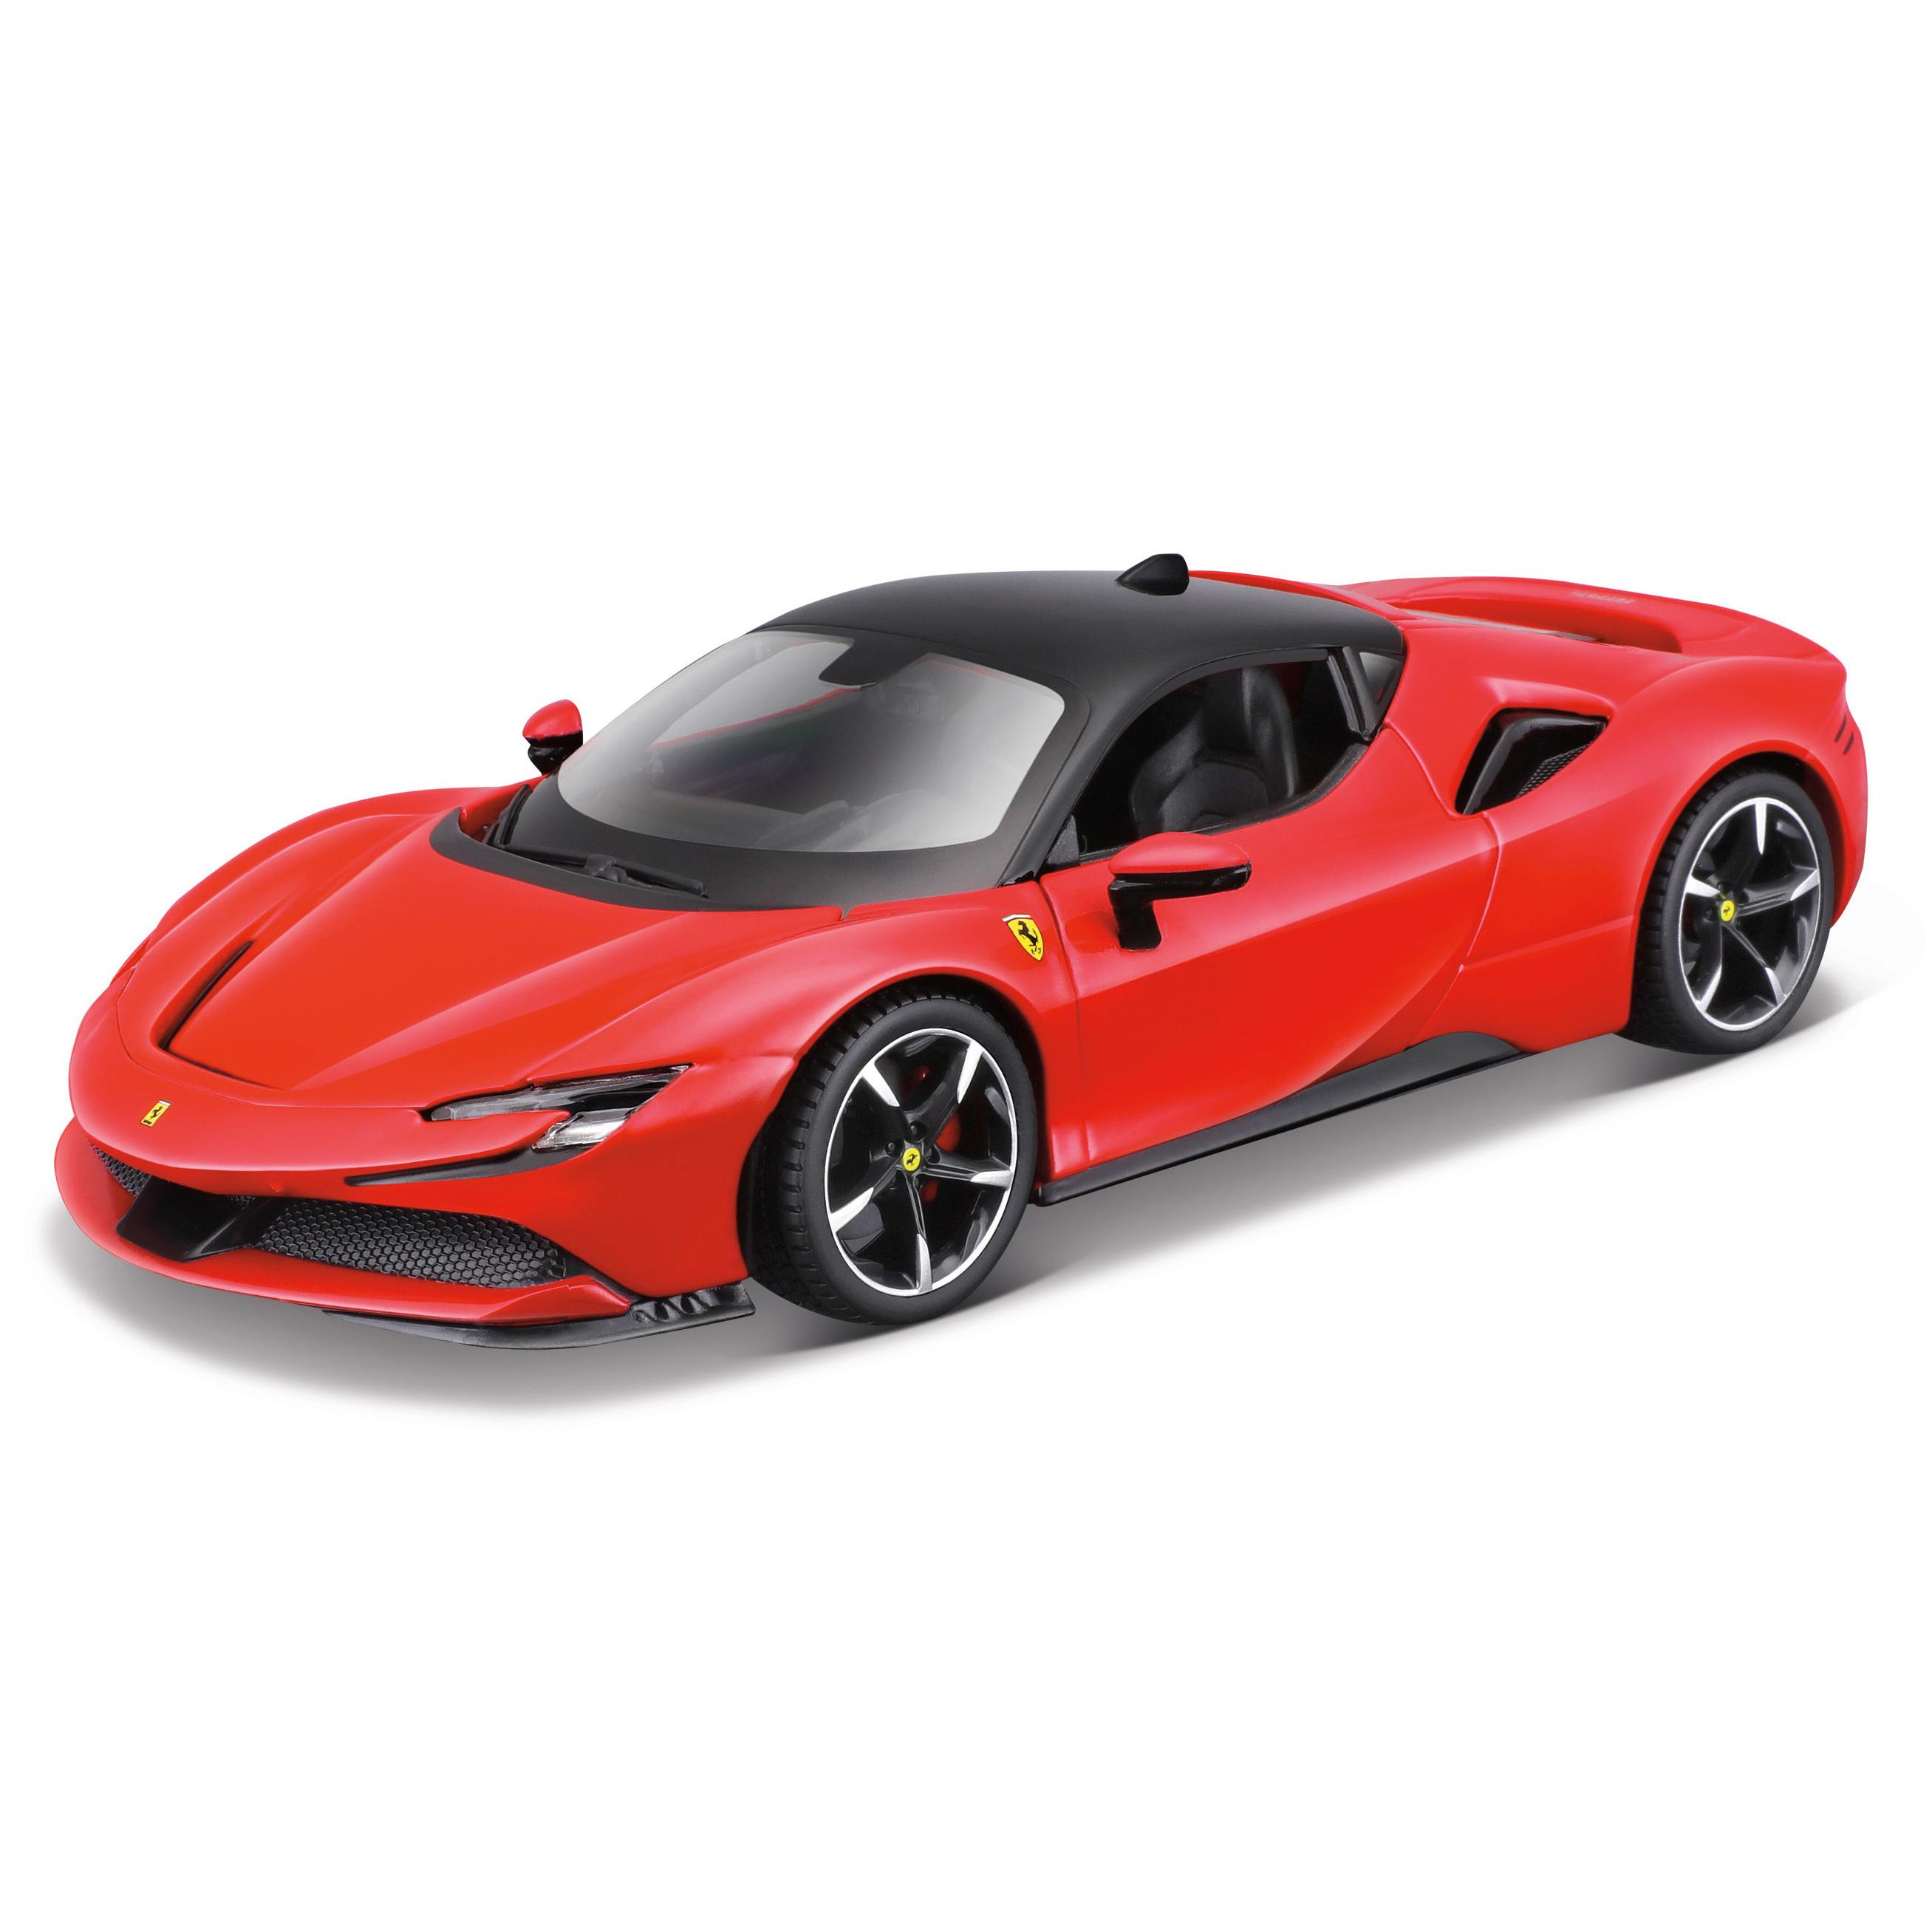 Игрушечная машинка Maisto сборная Ferrari SF90 Stradale, 1:24, красная 39137 игрушечная машинка maisto ford gt heritage 2021 1 18 белая 31390